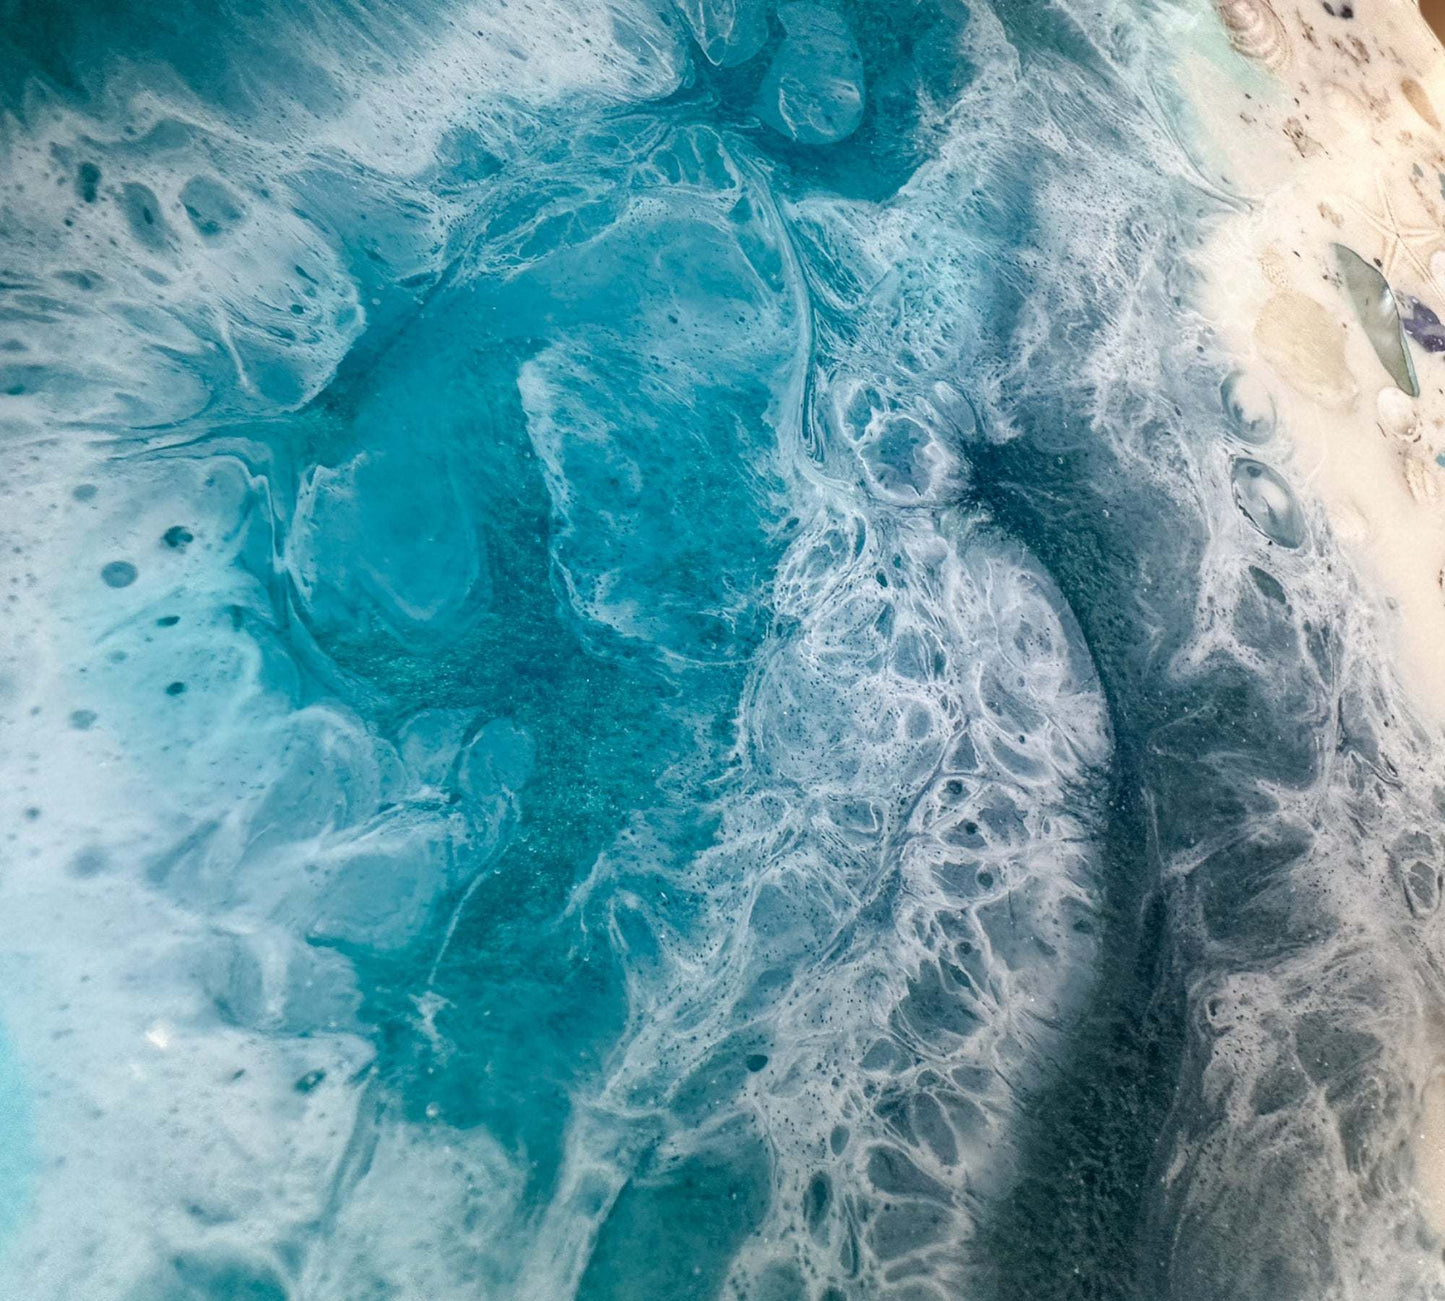 Seaside Splendor: Ocean Inspired Epoxy Resin Tray